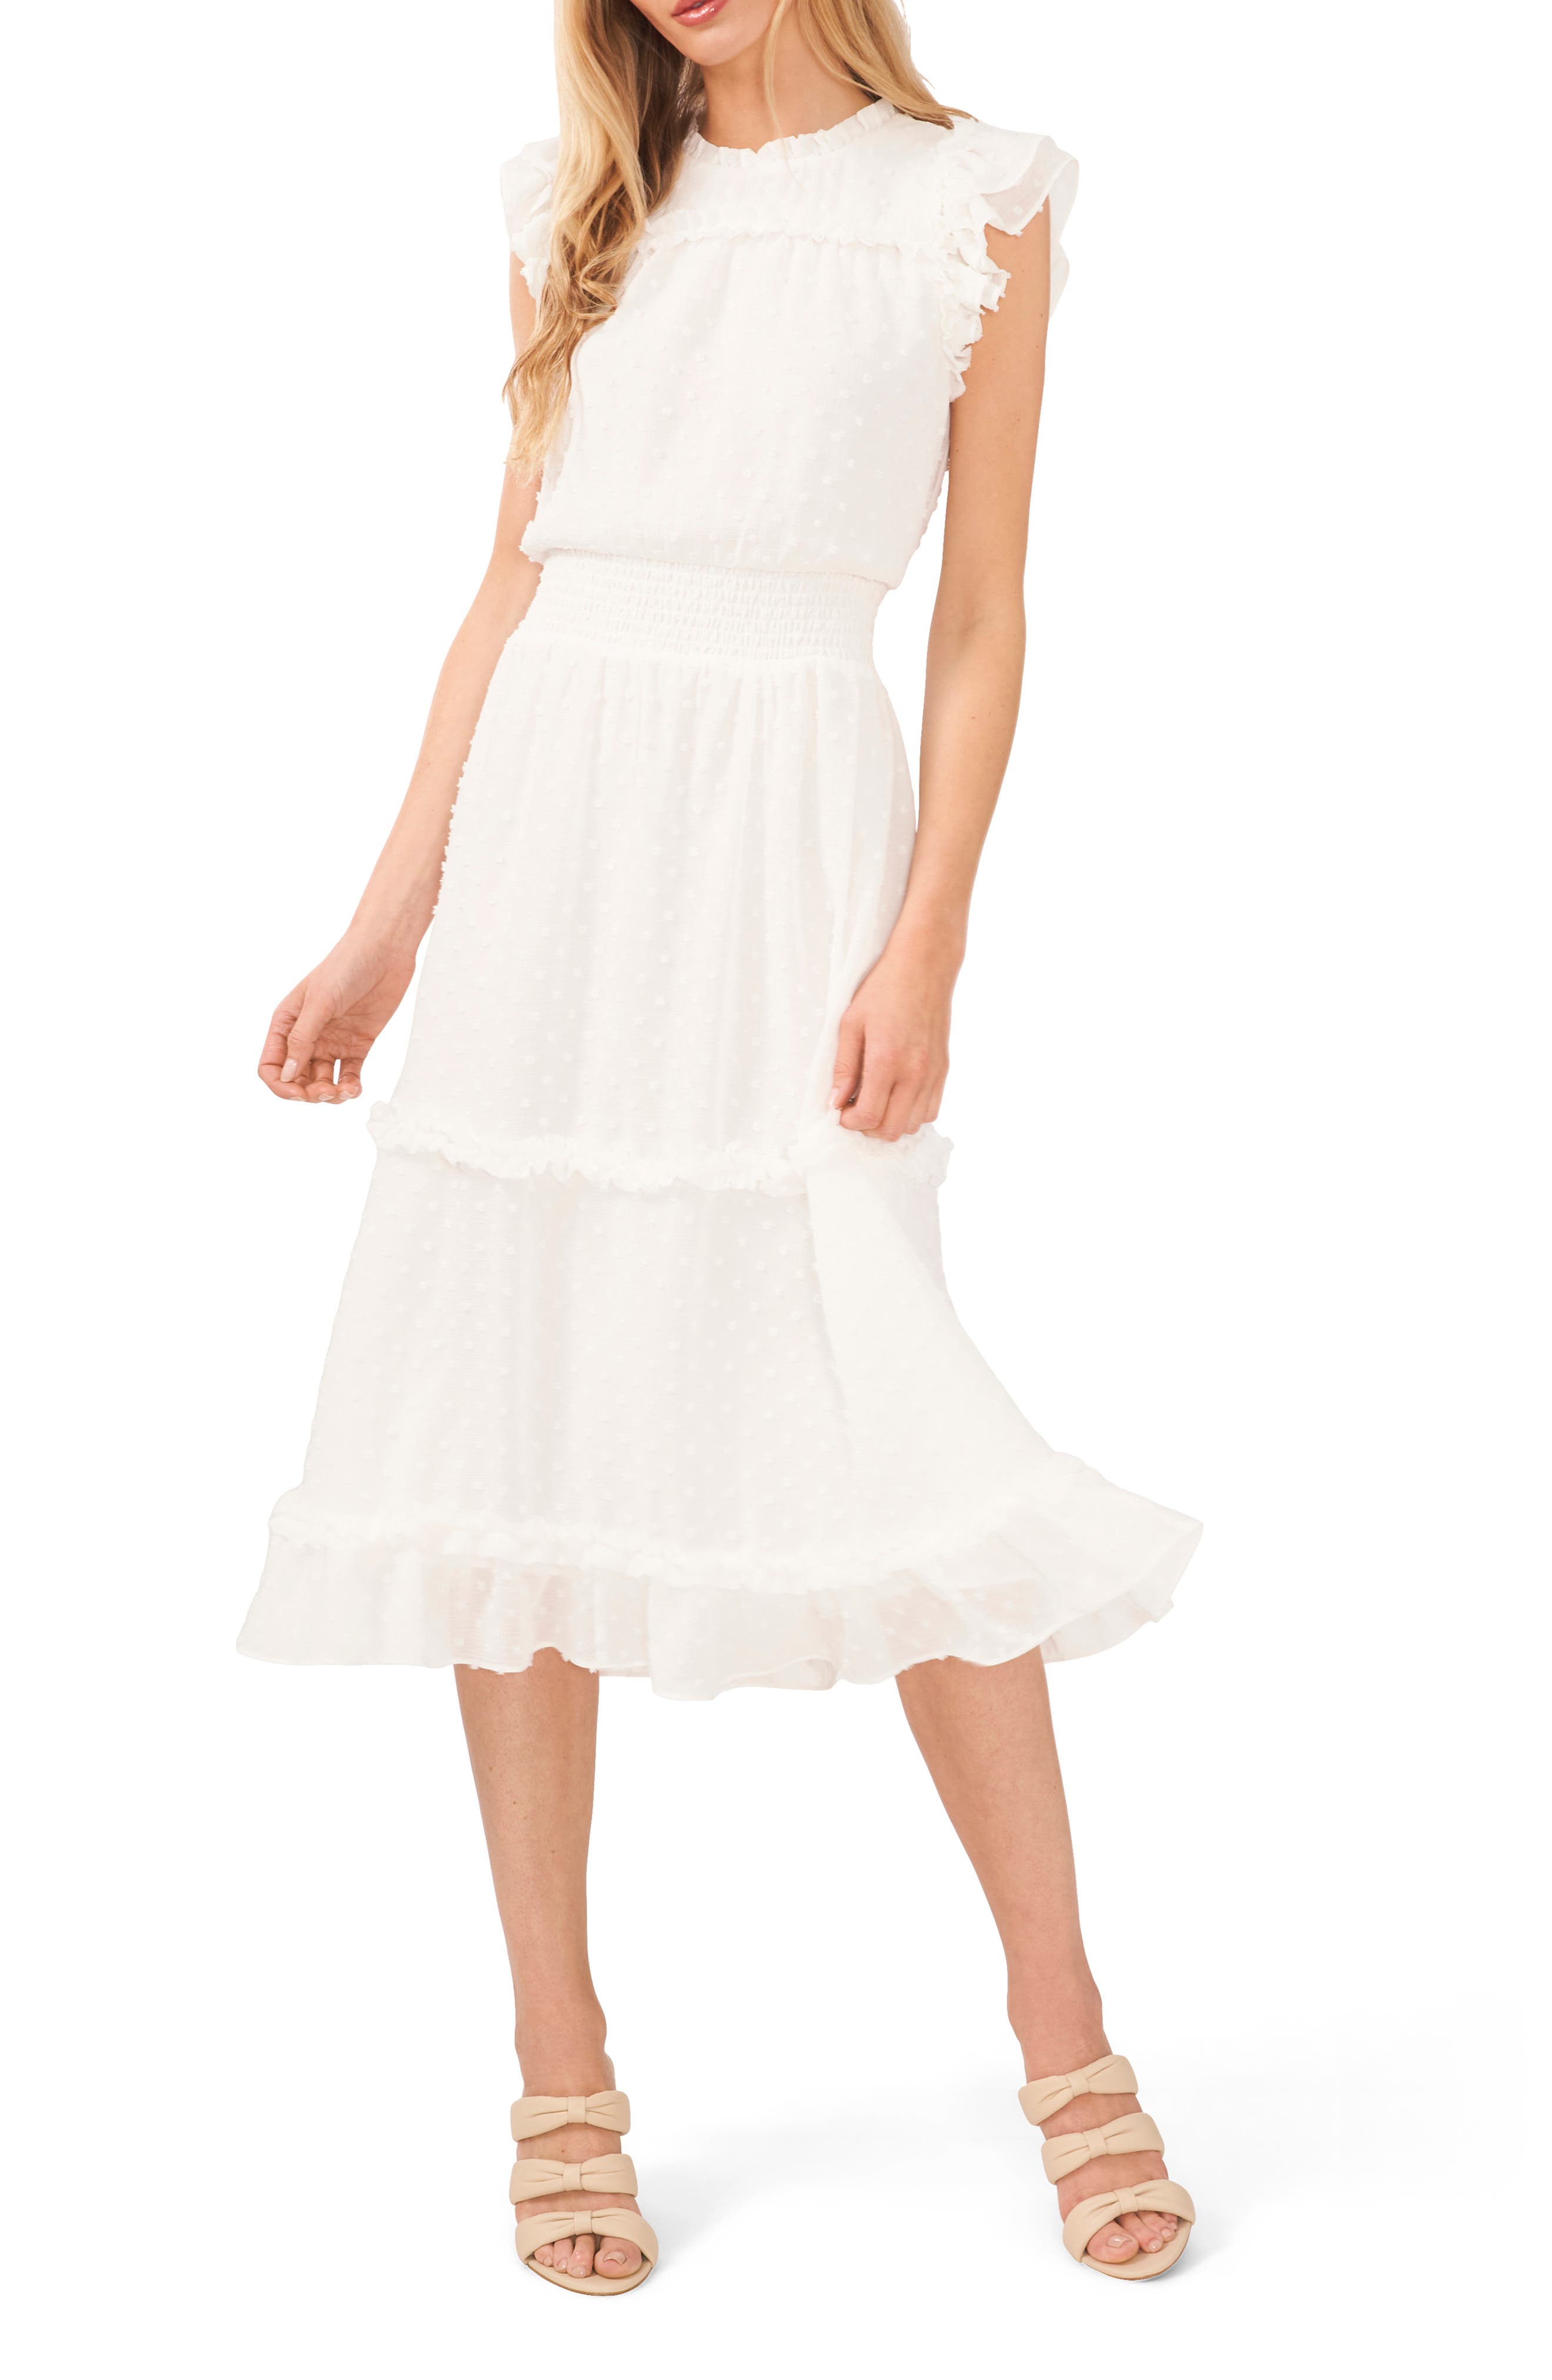 nordstrom rack white dress